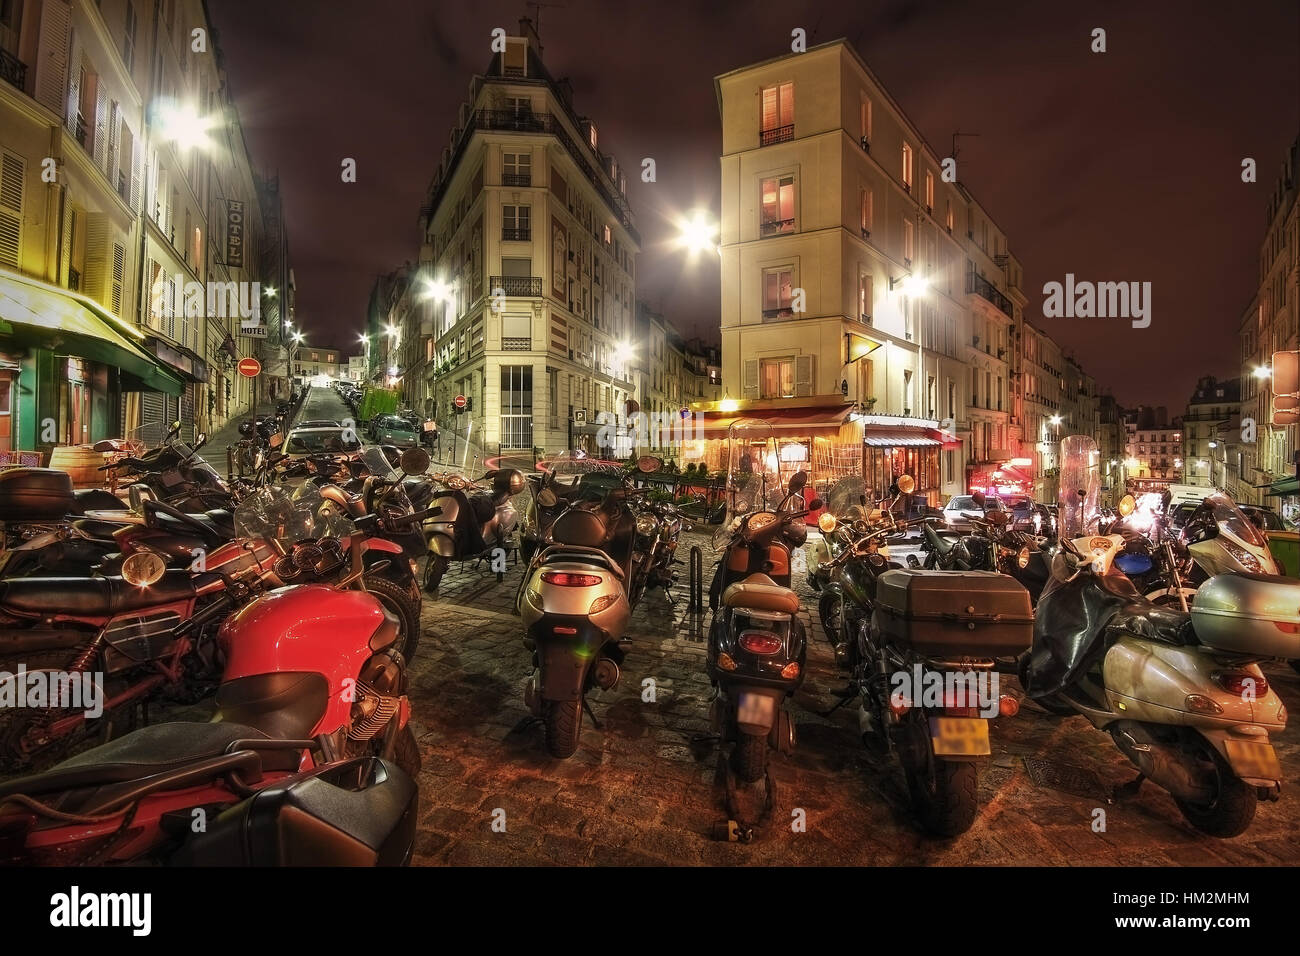 París. Francia. Motocicletas estacionados en la encrucijada de la rue Maurice Utrillo, rue Paul Albert, rue Feutrier y rue Muller. Foto de stock